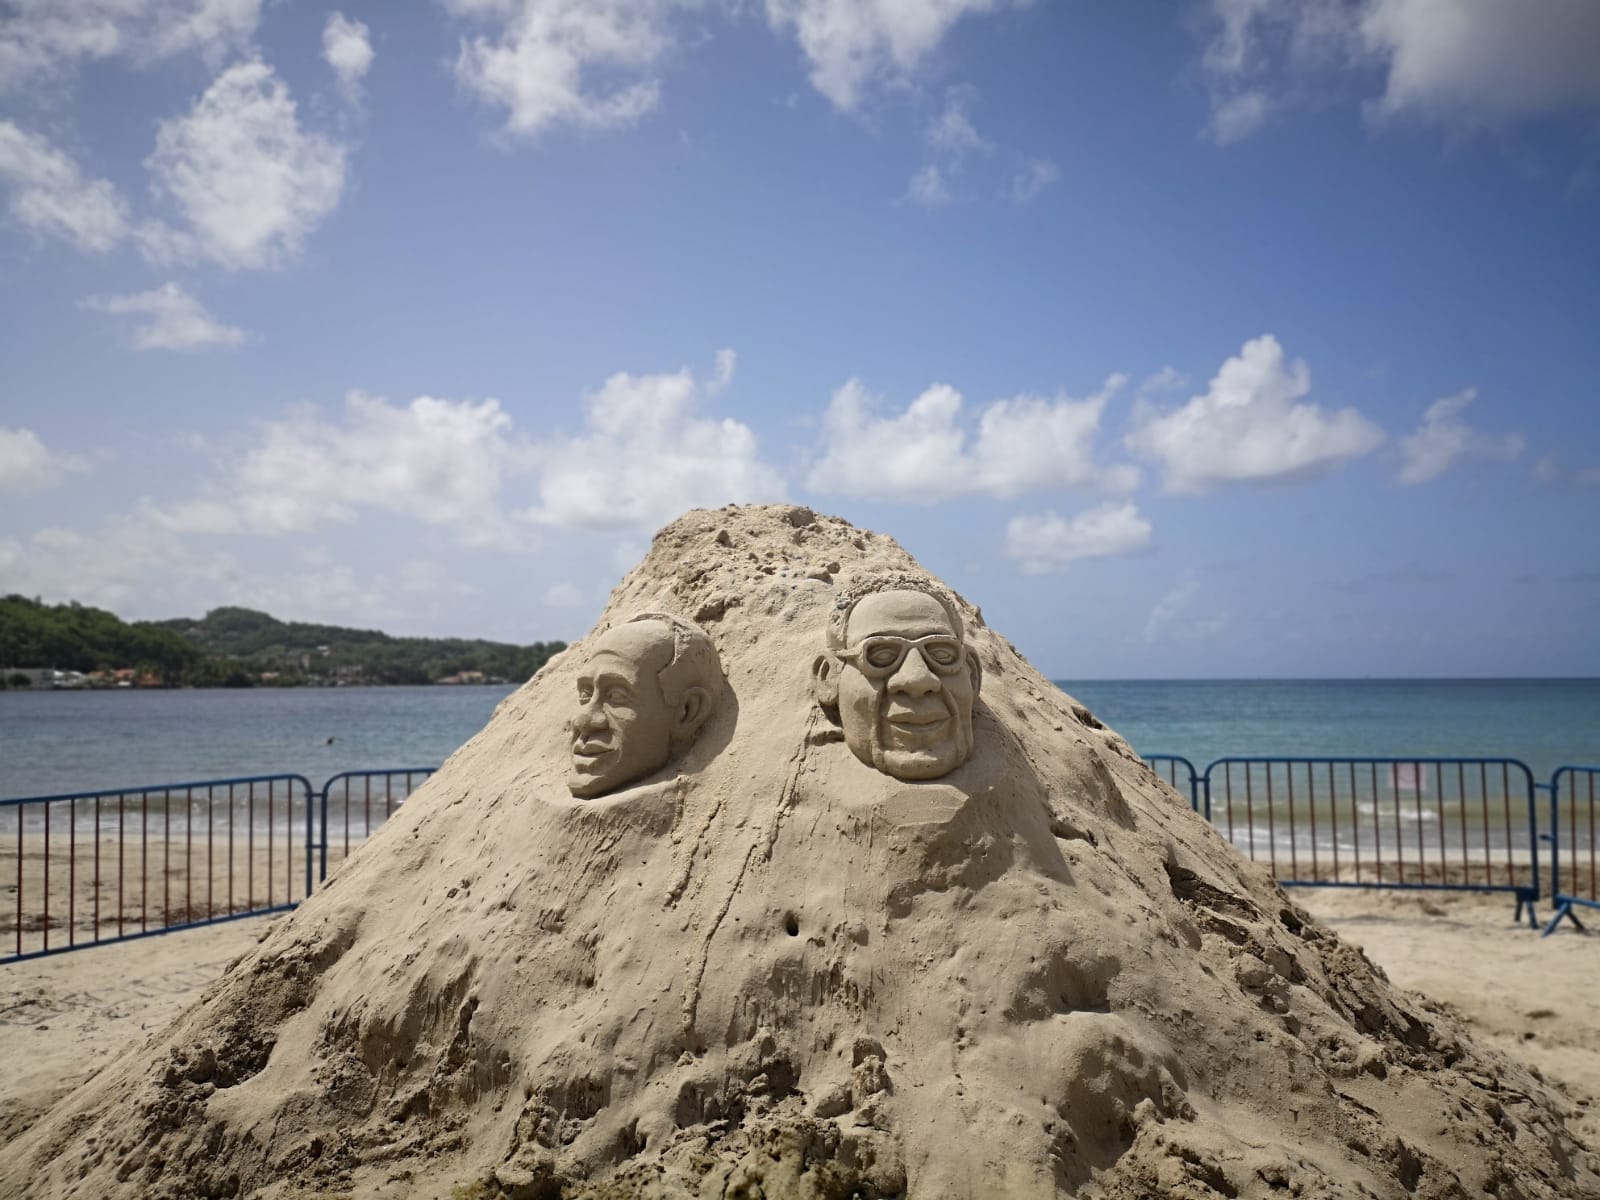     Le sable prend vie à Trinité

